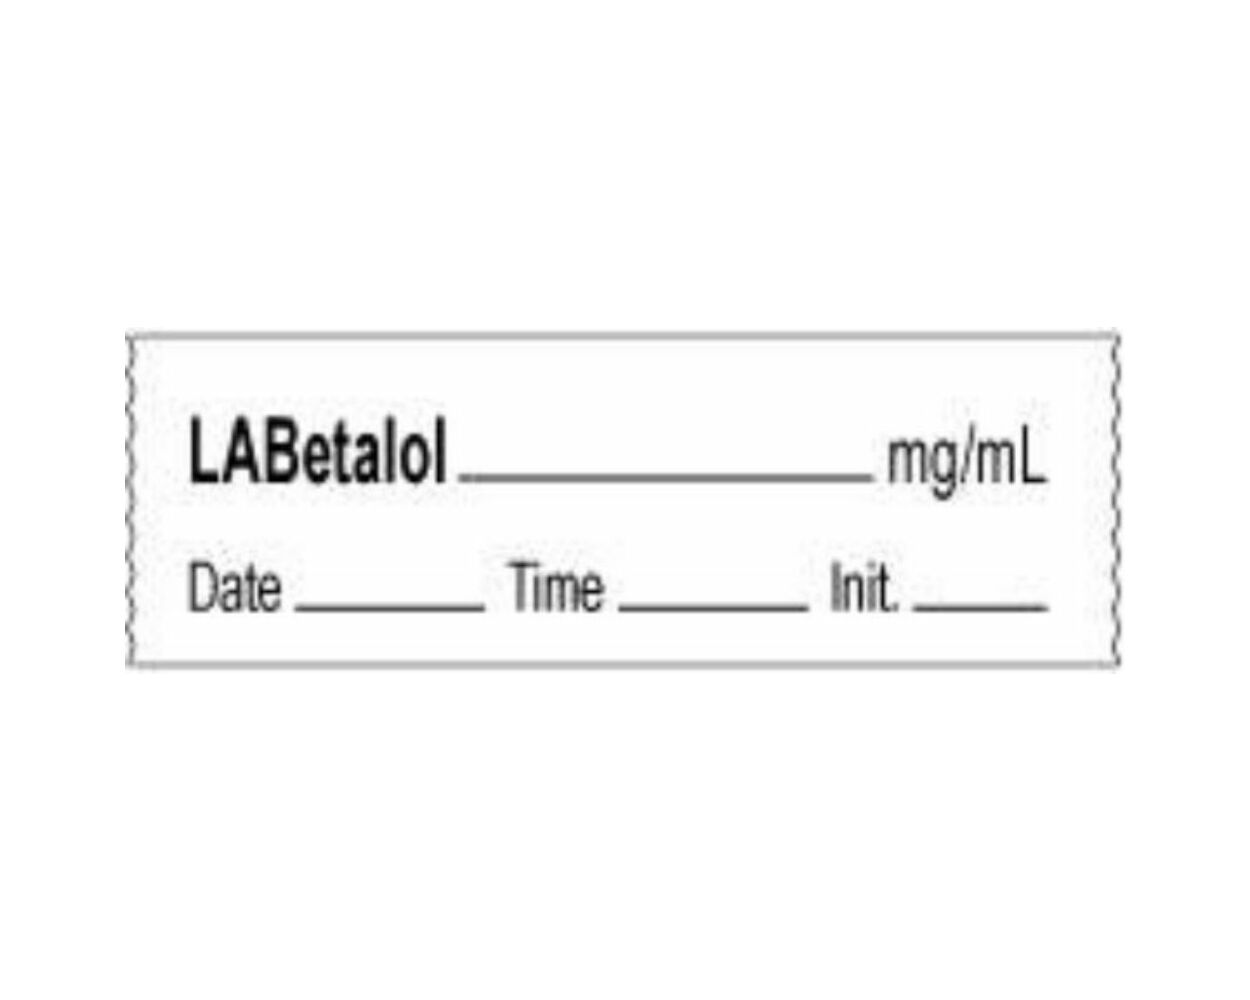 Anesthesia information - Lebetalol